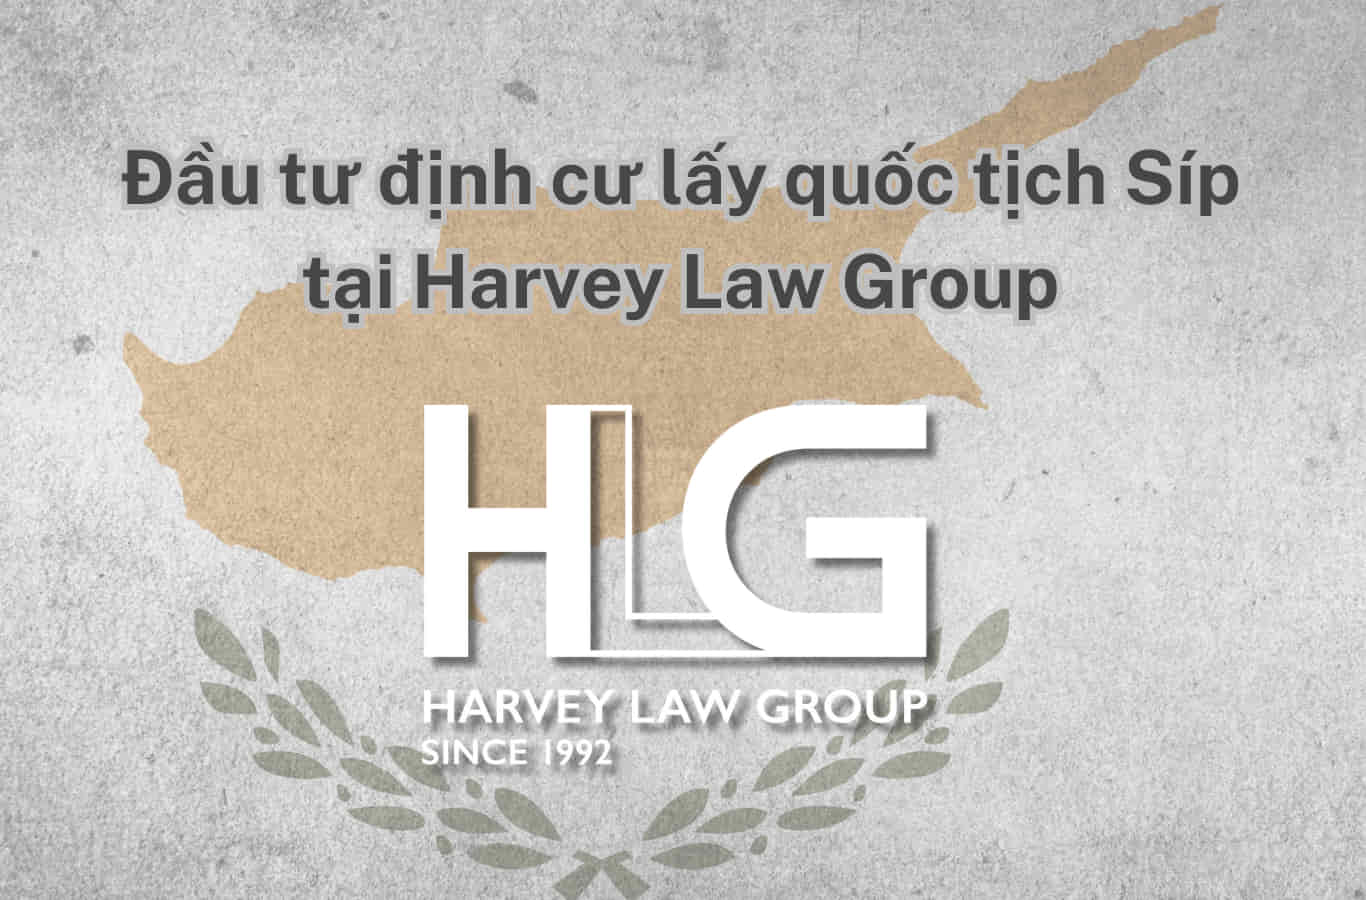 Đầu tư định cư lấy quốc tịch Síp tại Harvey Law Group